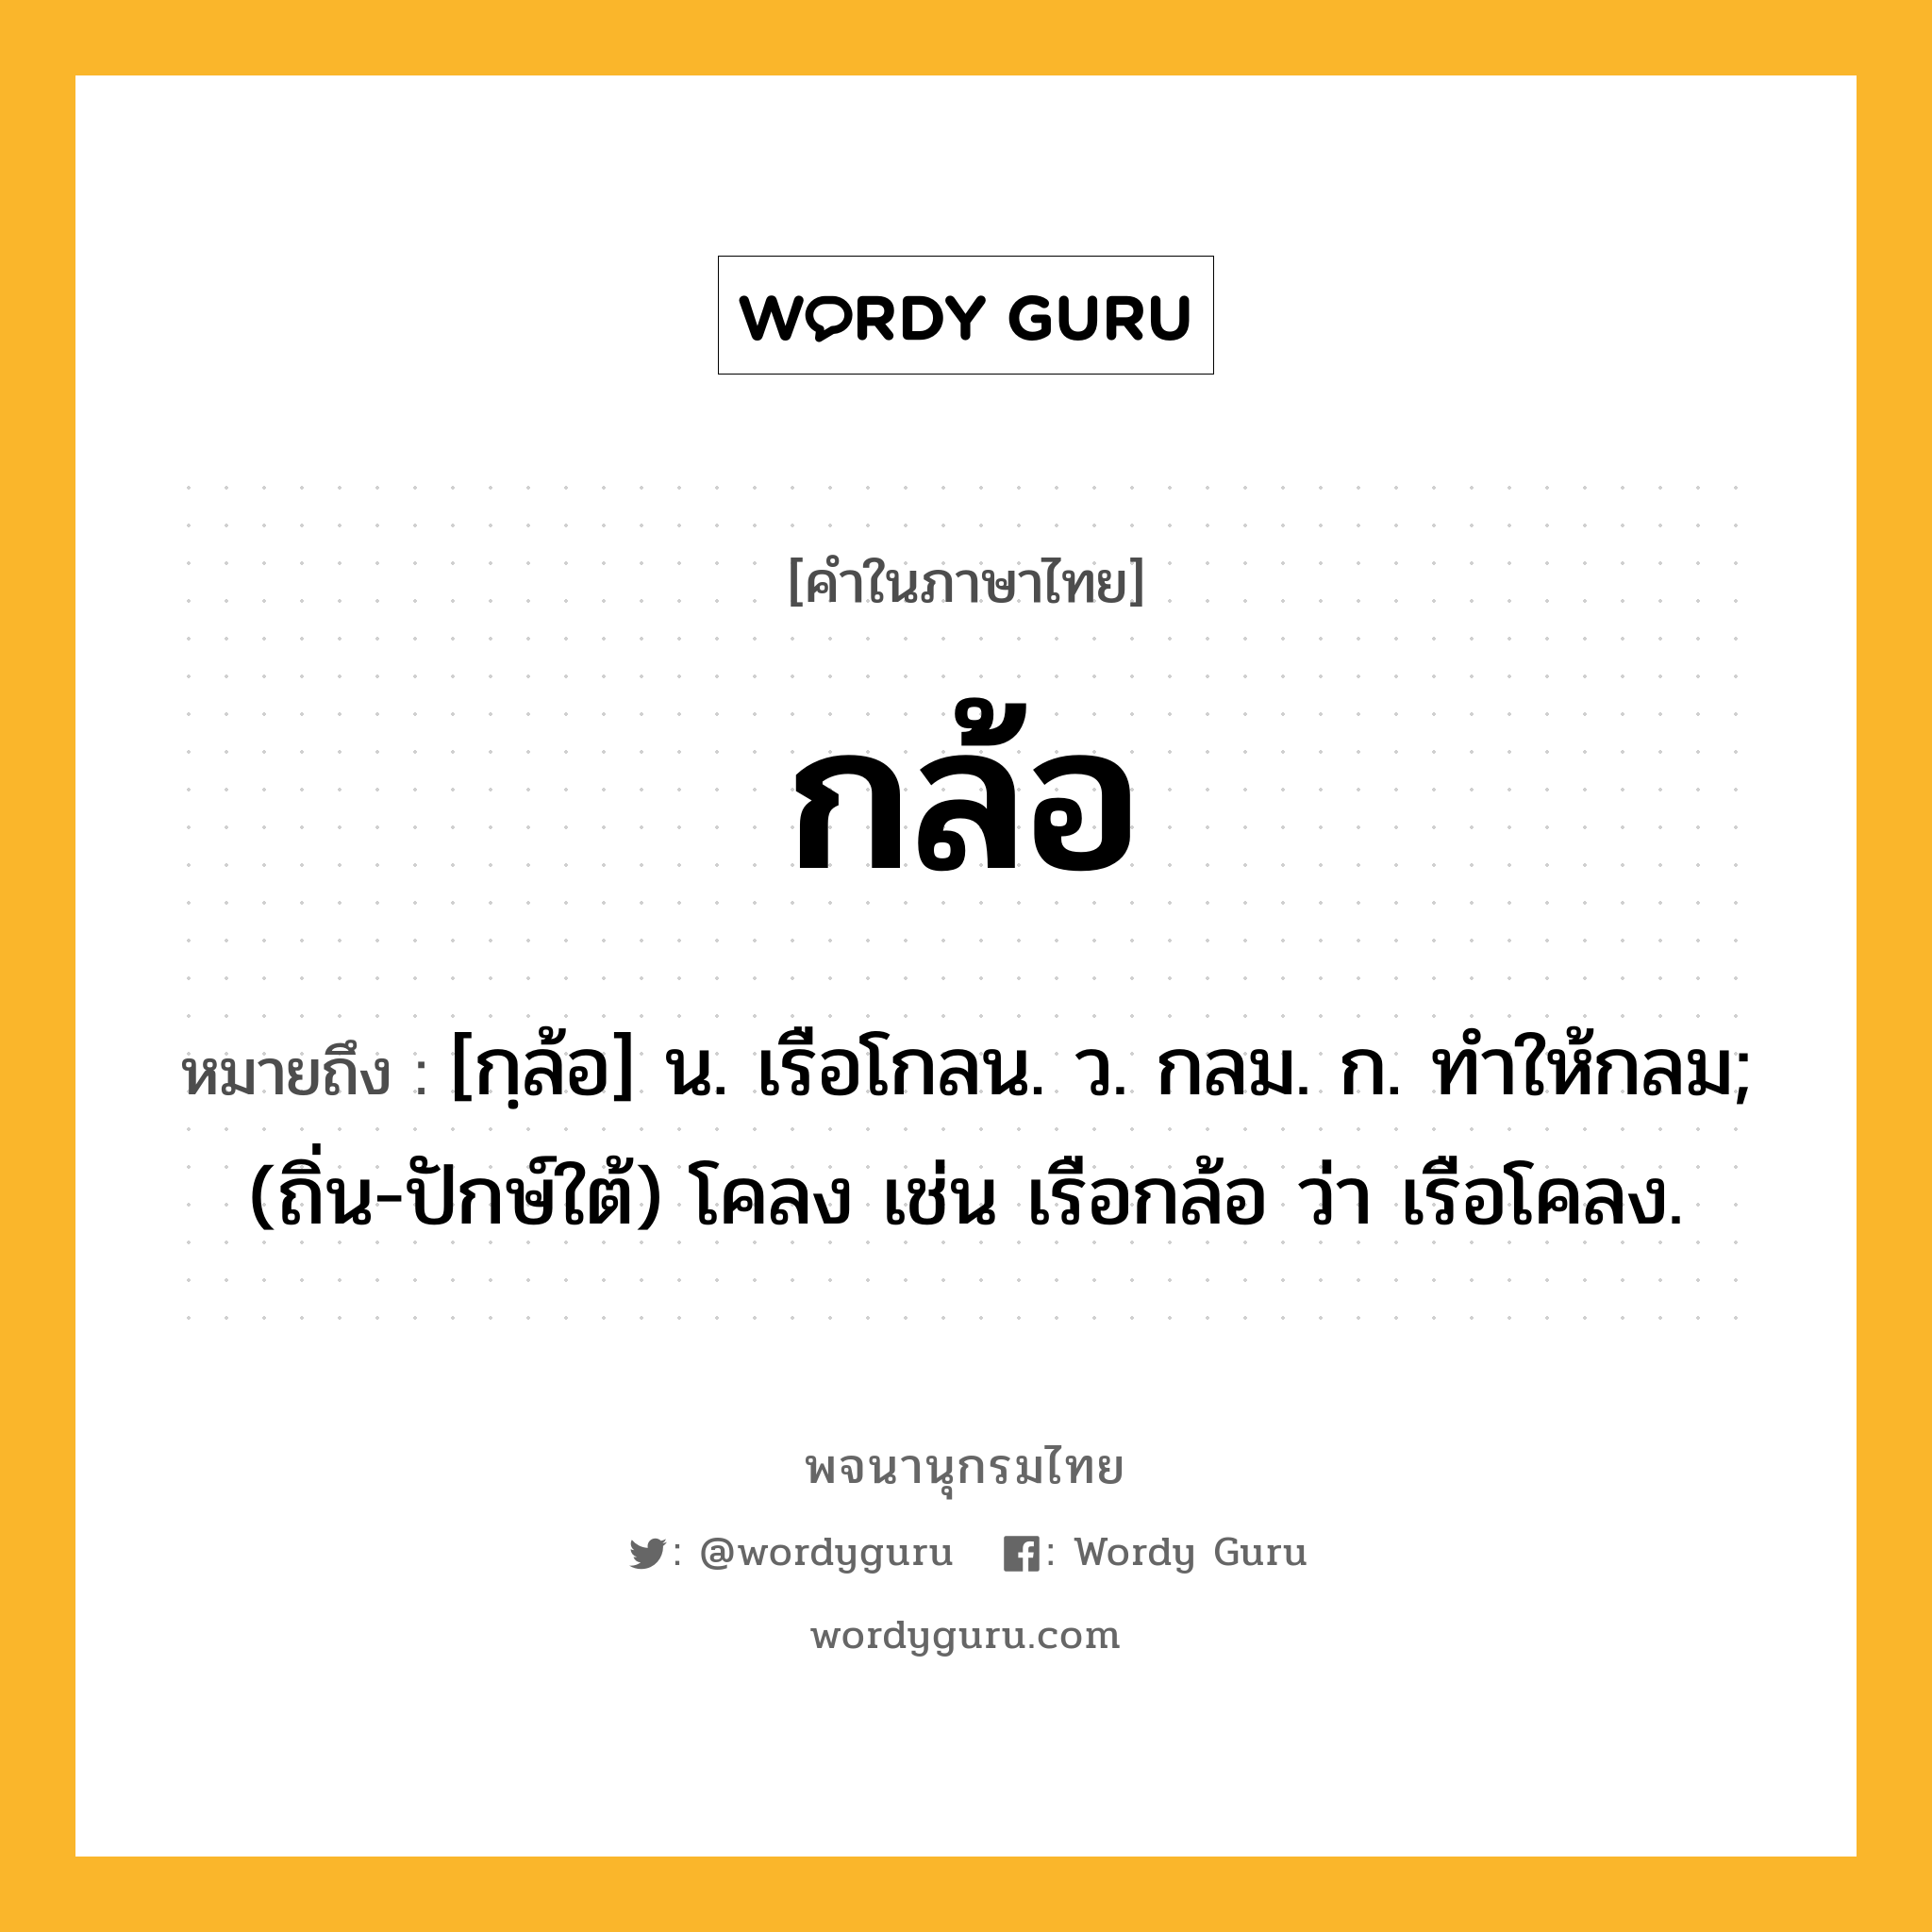 กล้อ ความหมาย หมายถึงอะไร?, คำในภาษาไทย กล้อ หมายถึง [กฺล้อ] น. เรือโกลน. ว. กลม. ก. ทําให้กลม; (ถิ่น-ปักษ์ใต้) โคลง เช่น เรือกล้อ ว่า เรือโคลง.